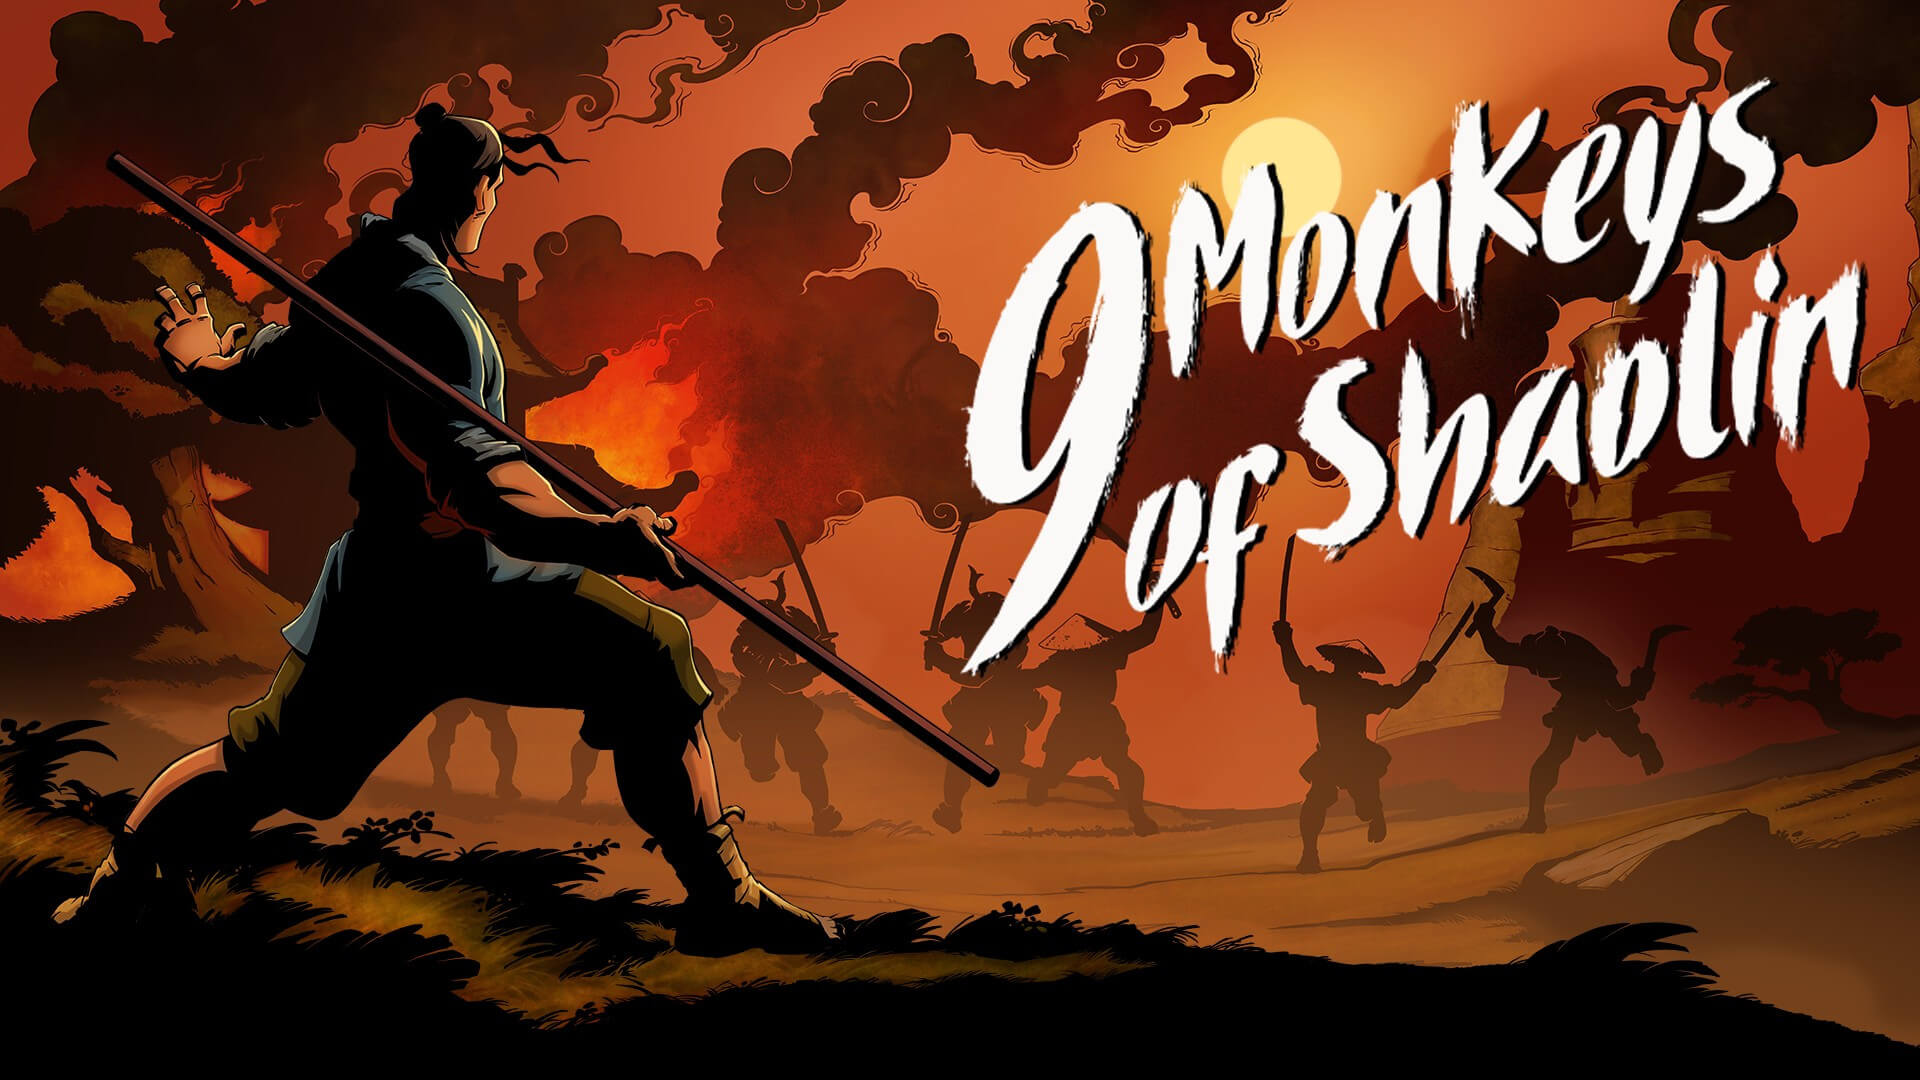 9 Monkeys of Shaolin Free PC Download